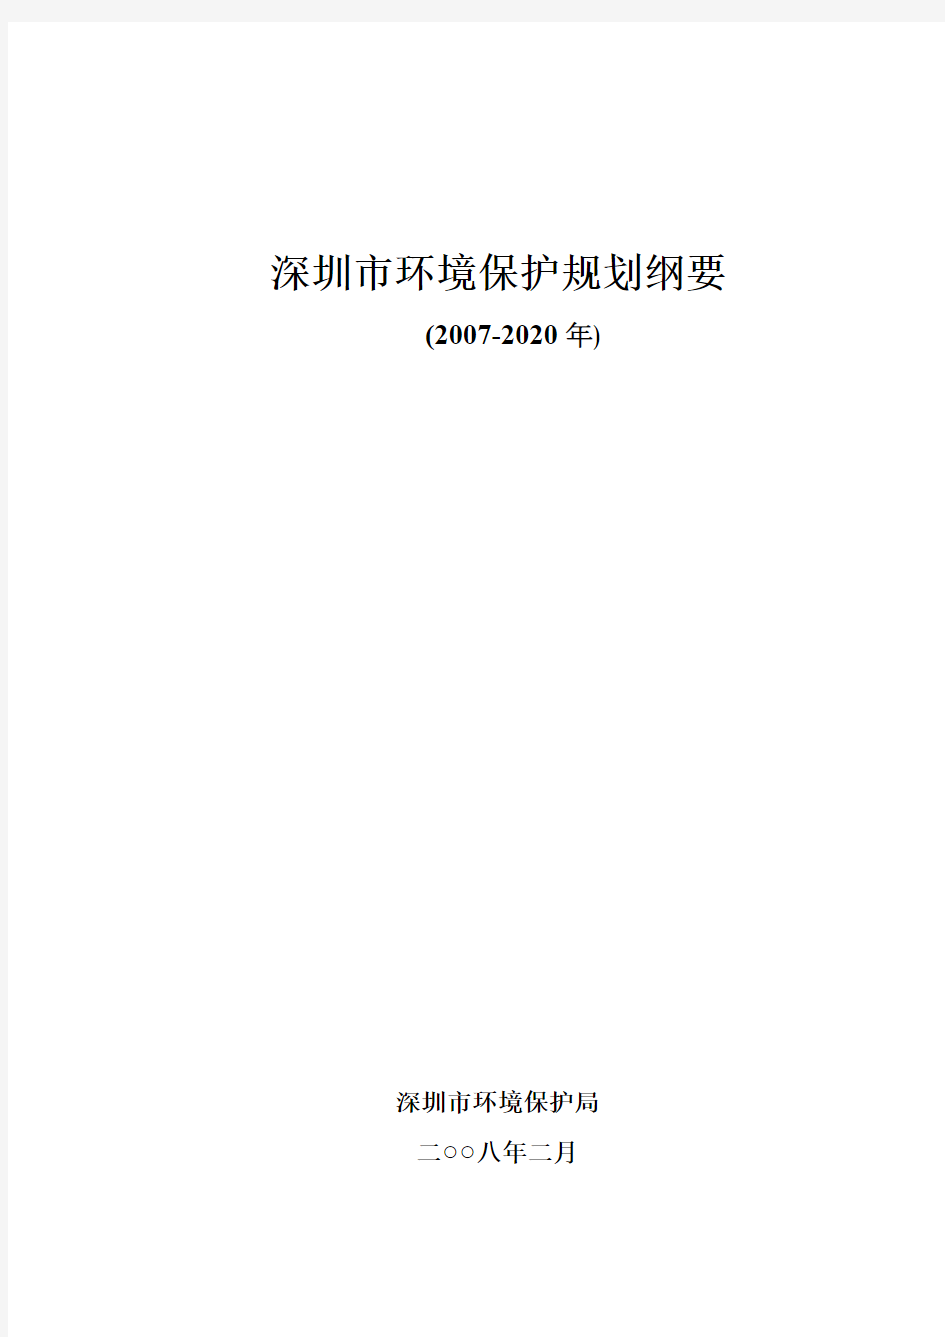 深圳市环境保护规划纲要(2007-20